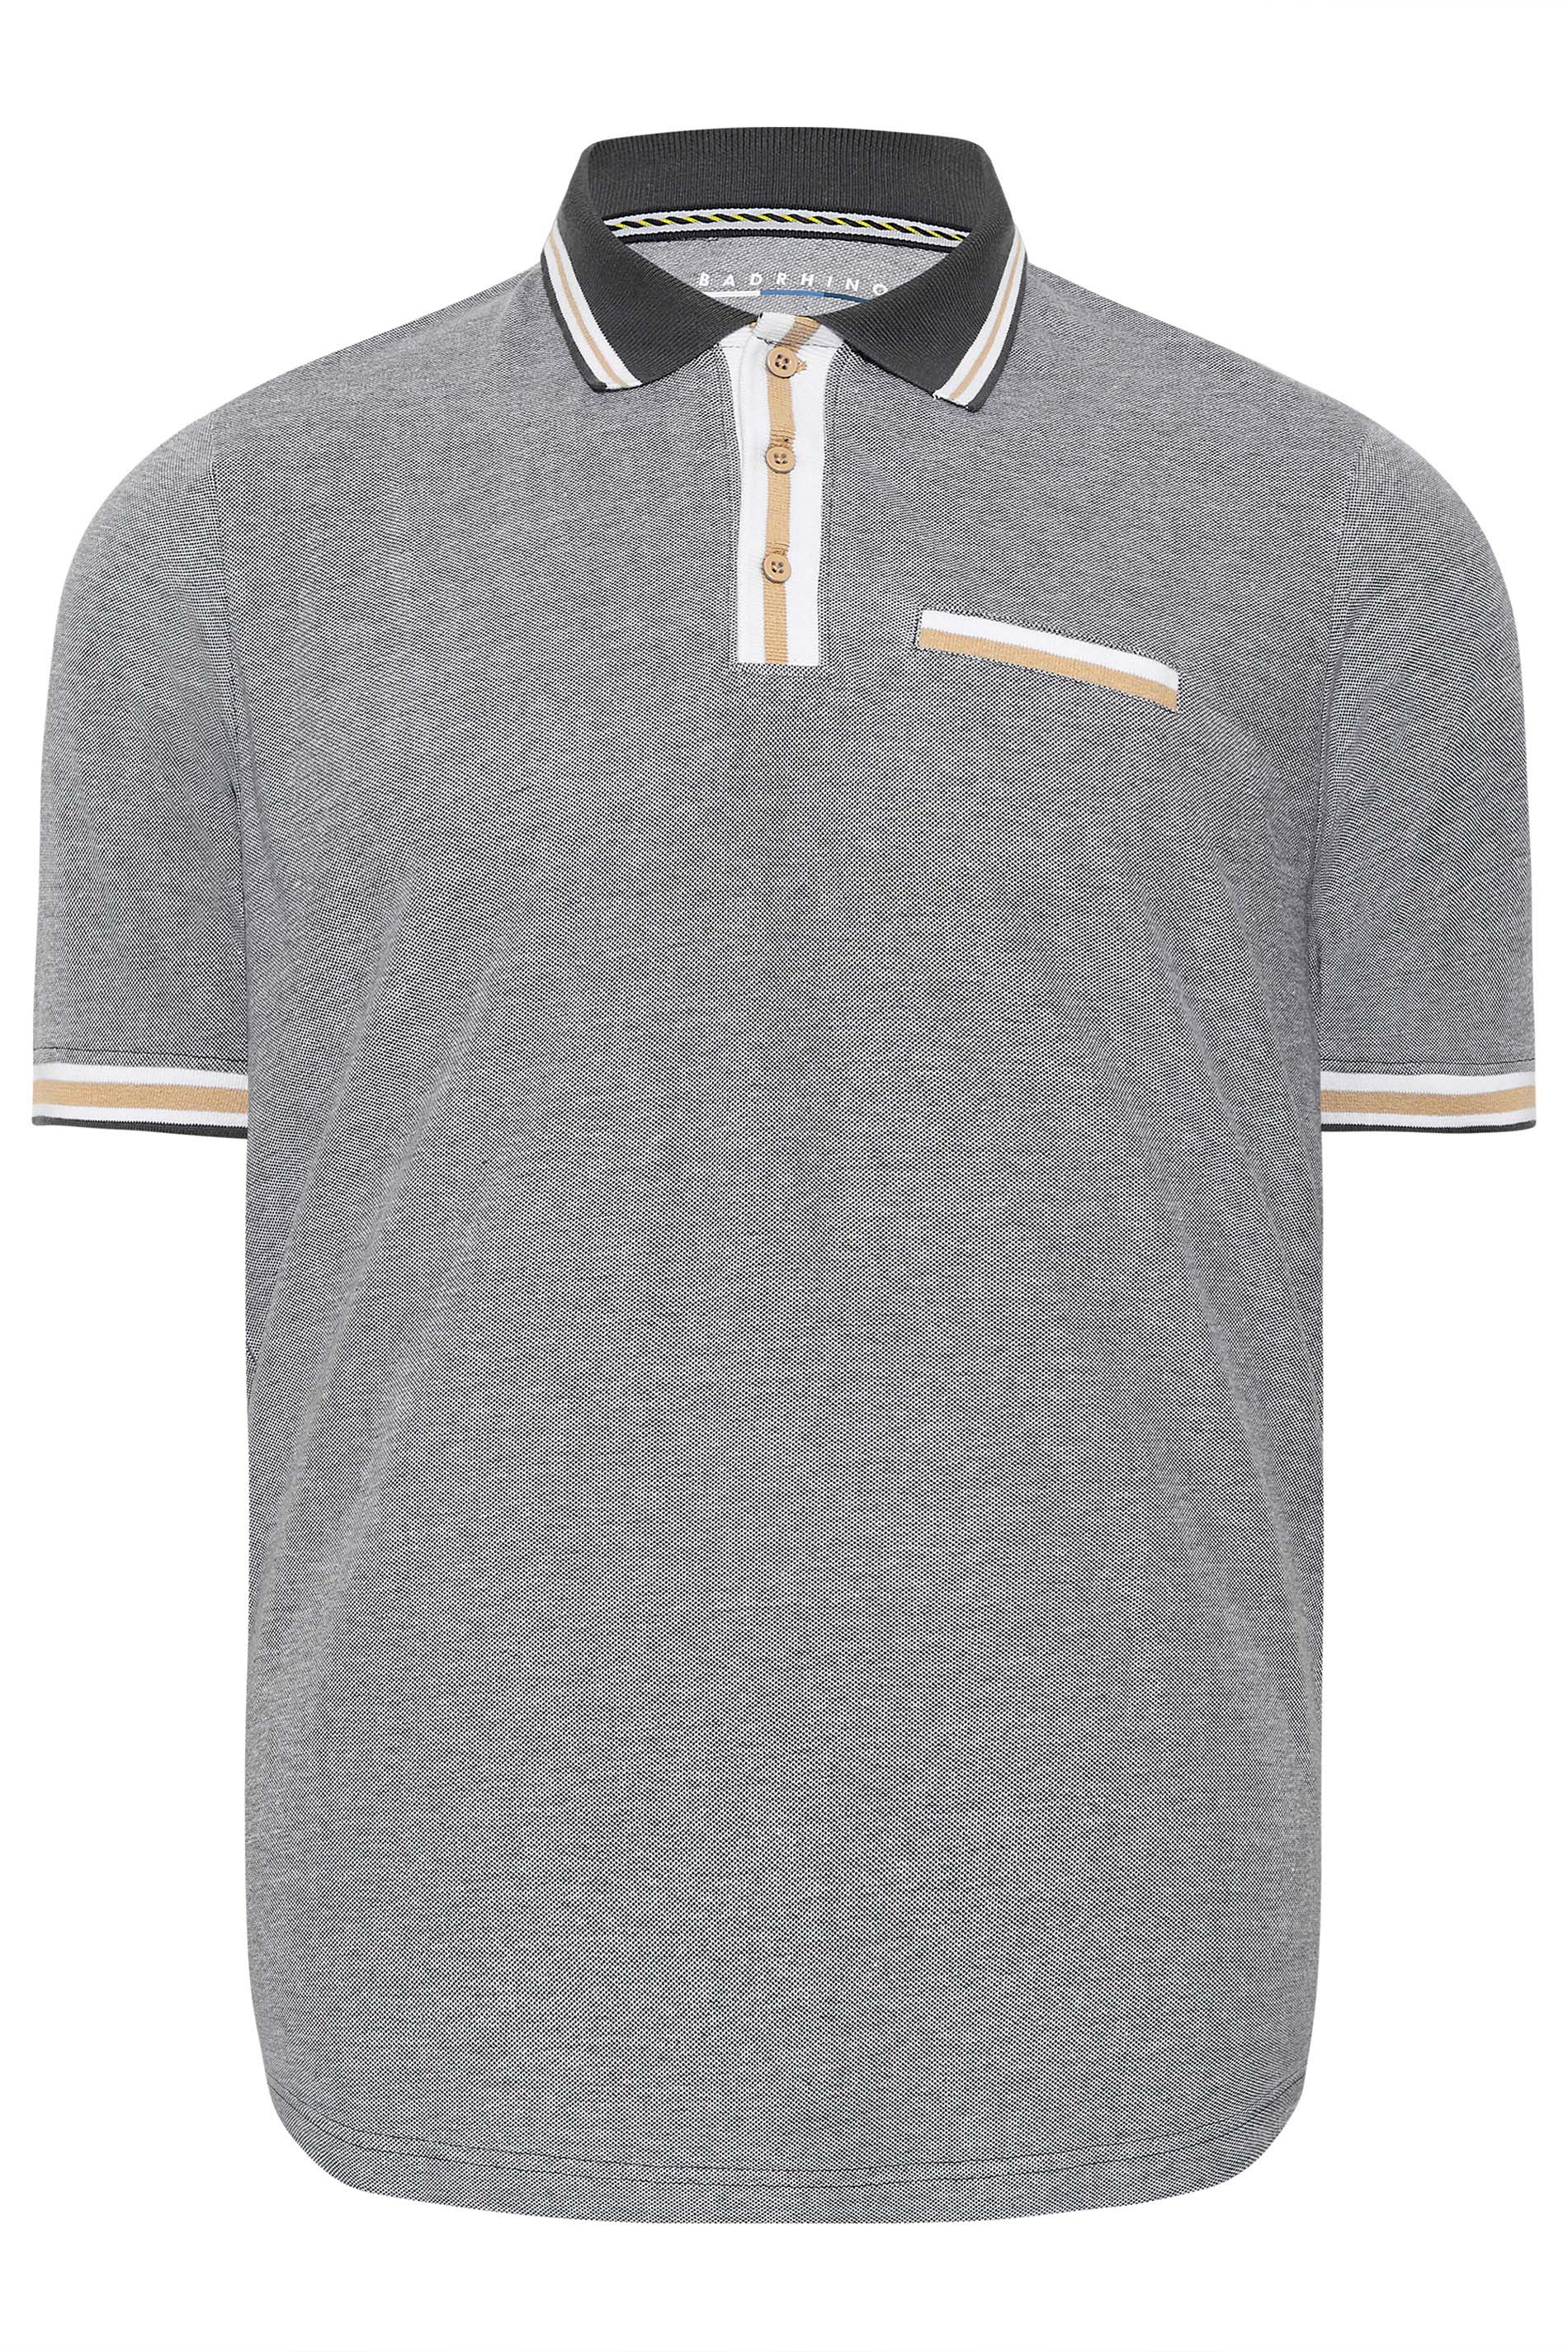 BadRhino Big & Tall Grey Stripe Placket Polo Shirt | BadRhino 3